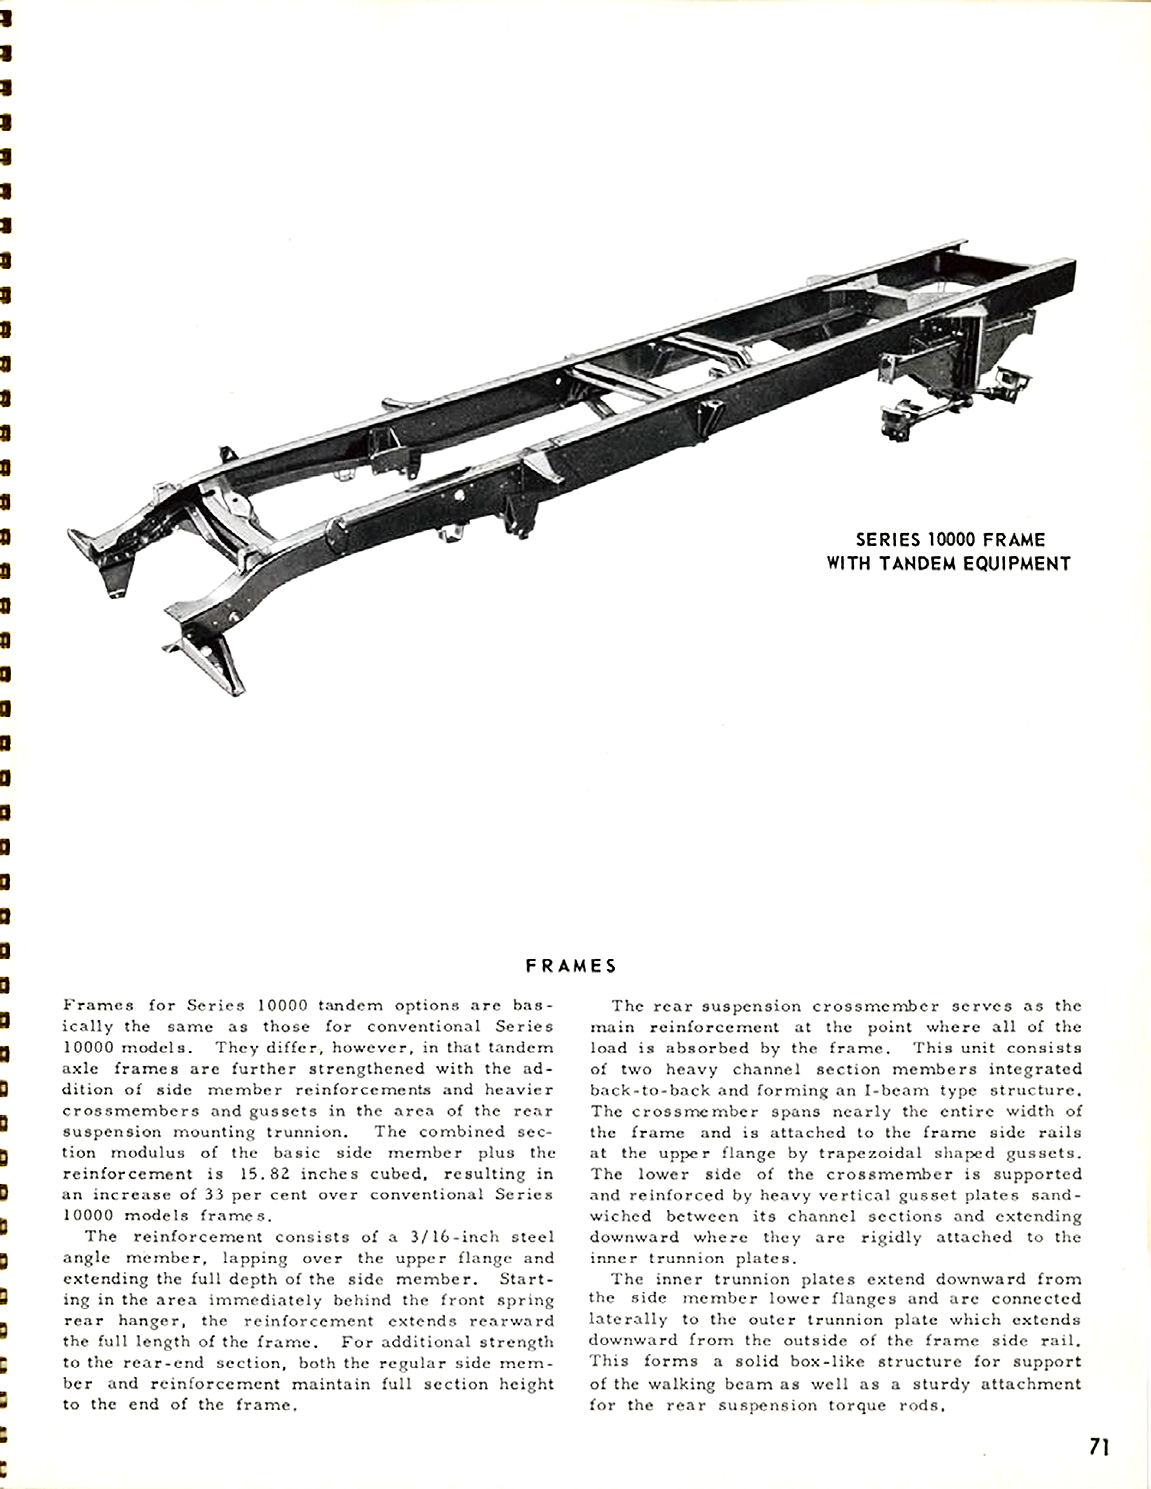 1956_Chevrolet_Truck_Engineering_Features-71